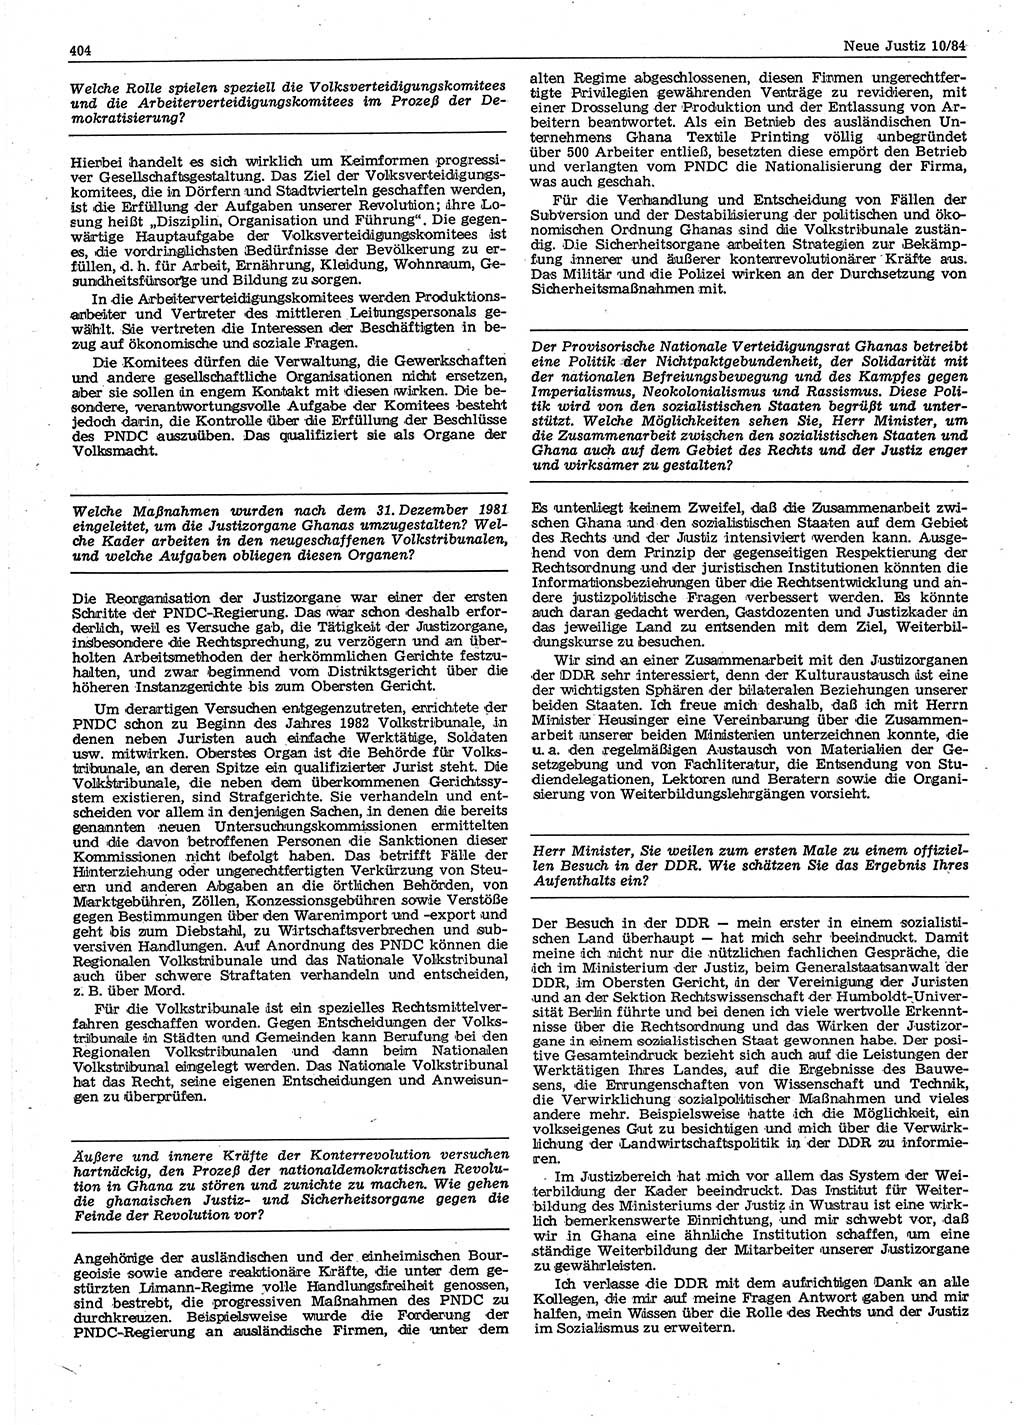 Neue Justiz (NJ), Zeitschrift für sozialistisches Recht und Gesetzlichkeit [Deutsche Demokratische Republik (DDR)], 38. Jahrgang 1984, Seite 404 (NJ DDR 1984, S. 404)